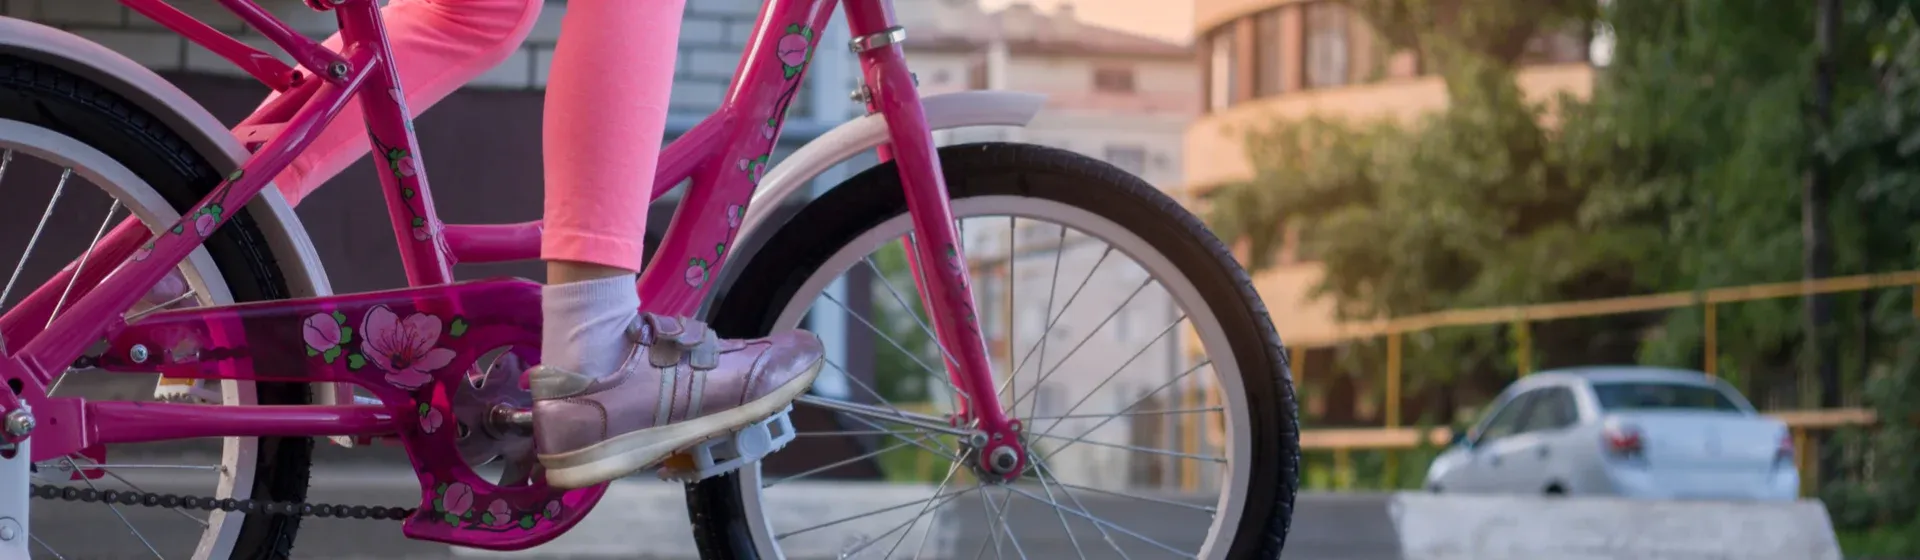 Bicicleta rosa: 7 opções para quem gosta da cor